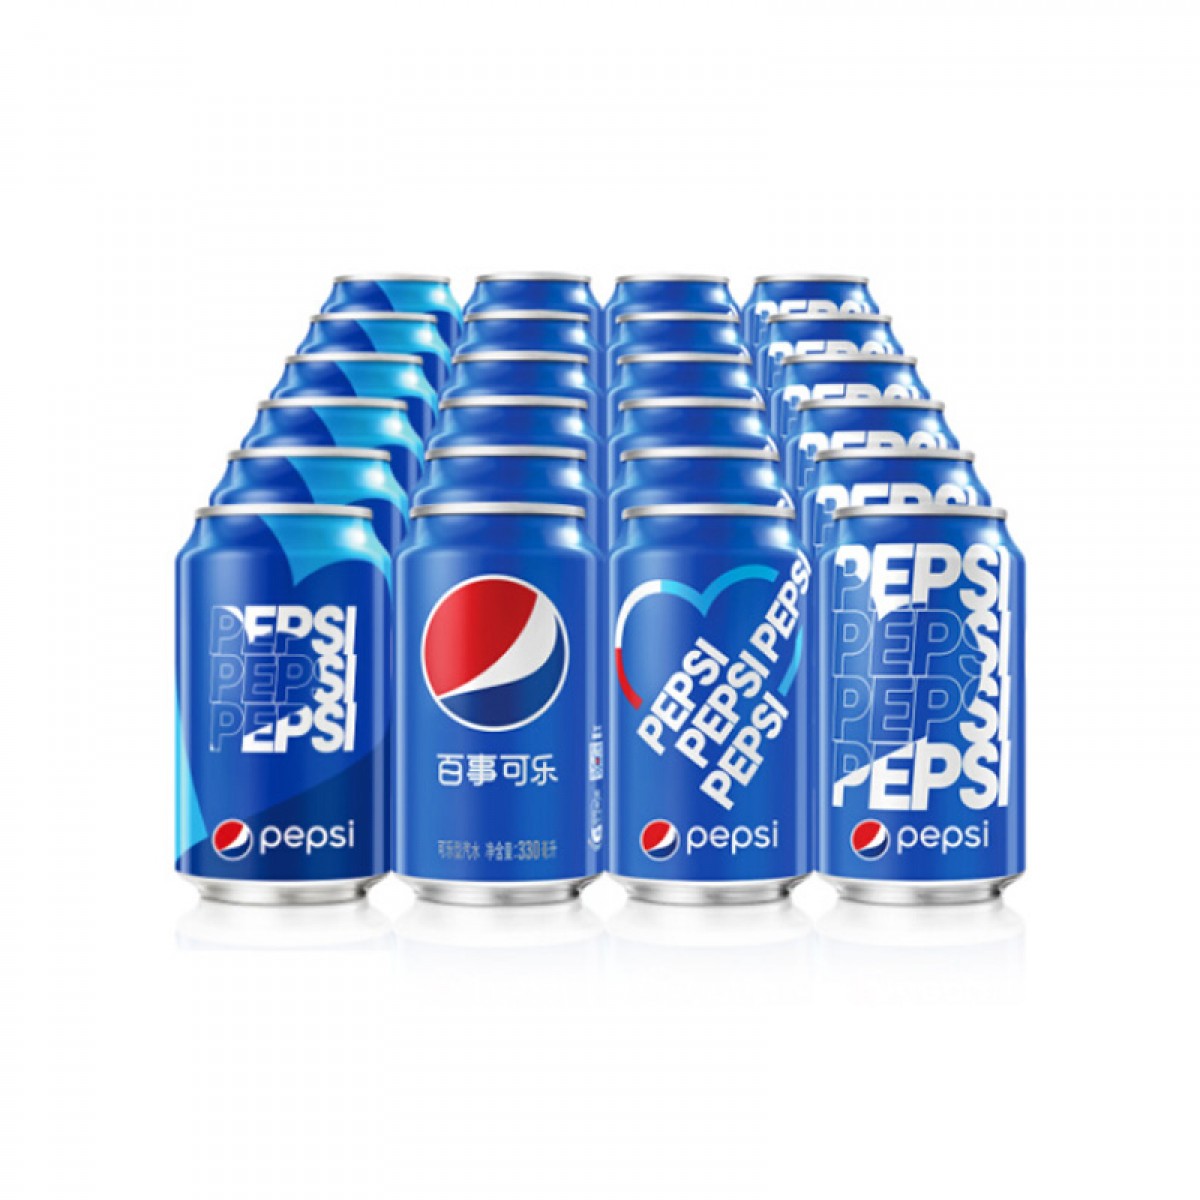 百事可乐 Pepsi 汽水碳酸饮料 330mlX24罐 整箱装 新老包装随机发货